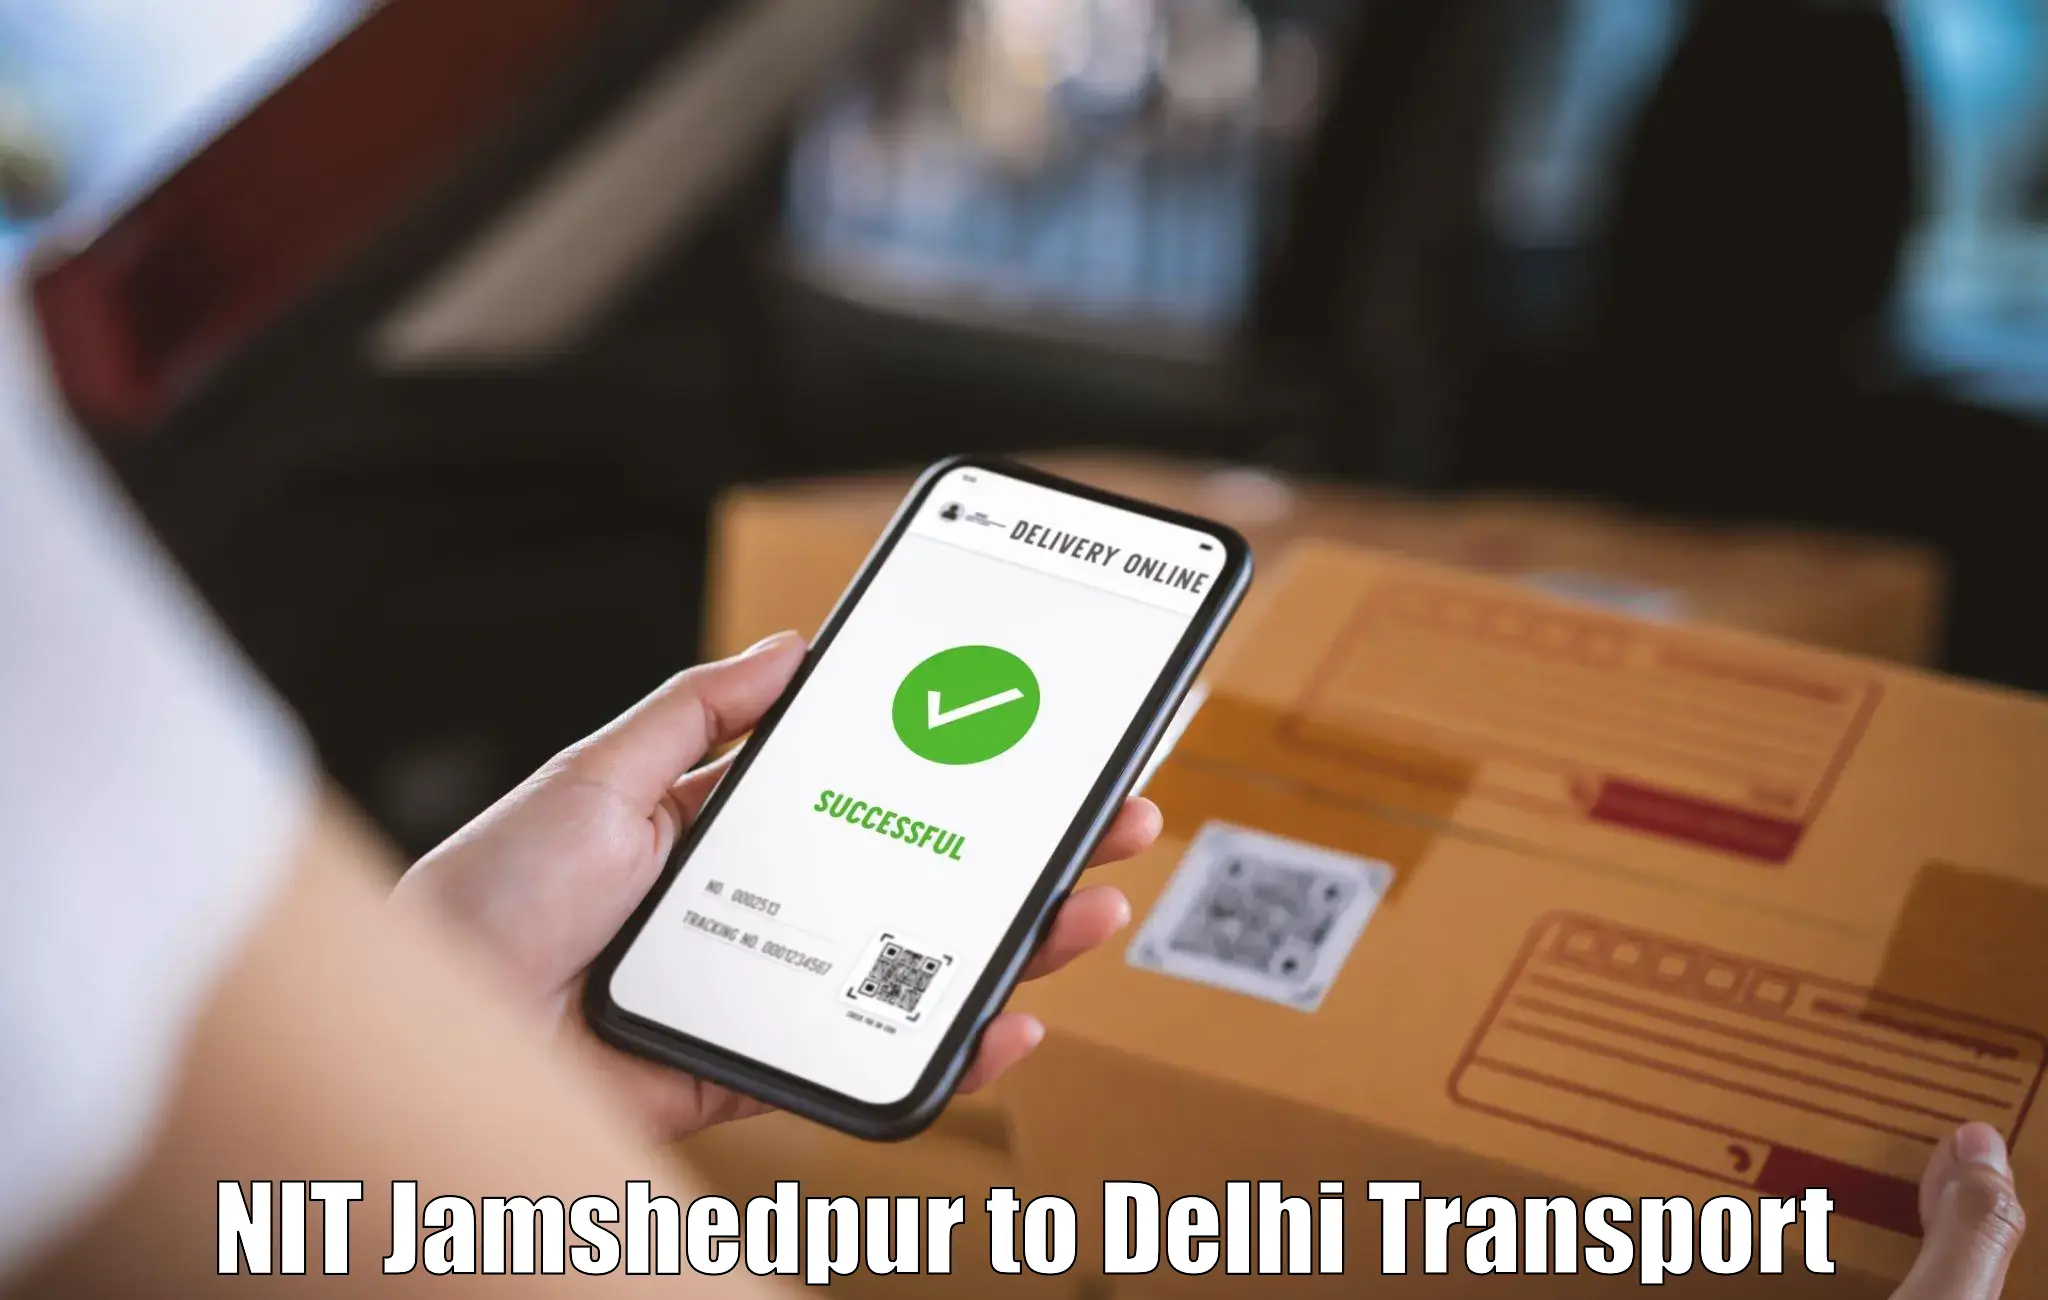 Nationwide transport services NIT Jamshedpur to Delhi